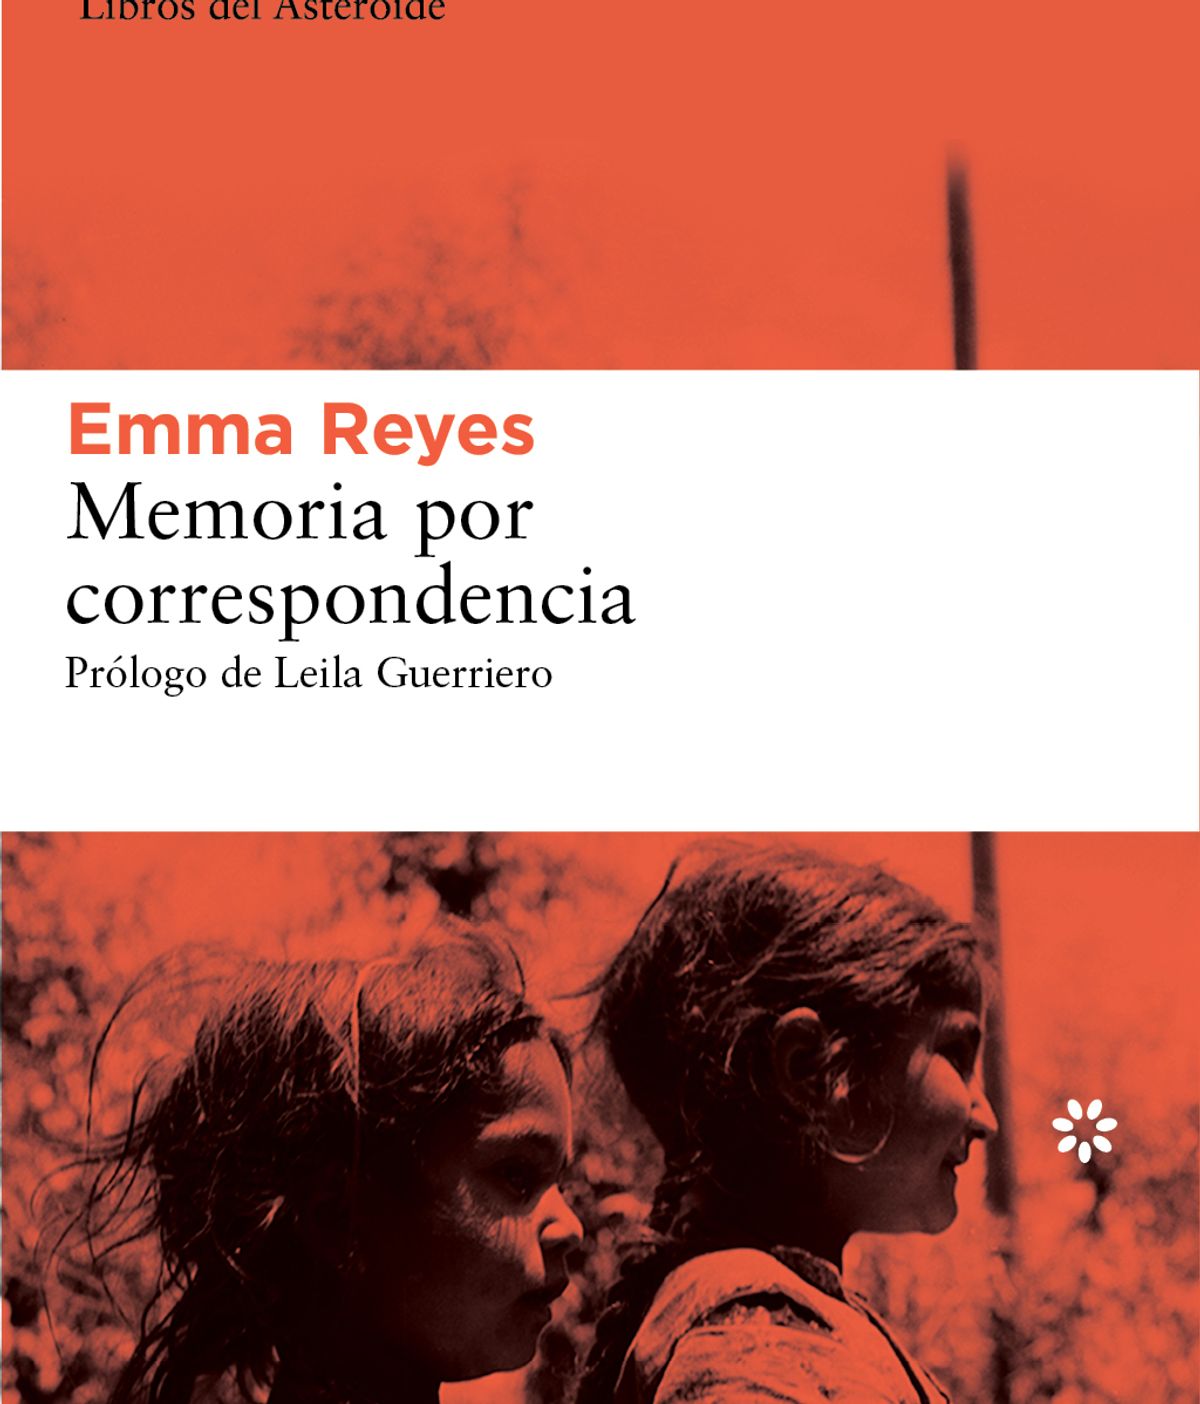 Emma Reyes, Germán Arciniegas, Gabriel García Márquez, Memorias por correspondencia,